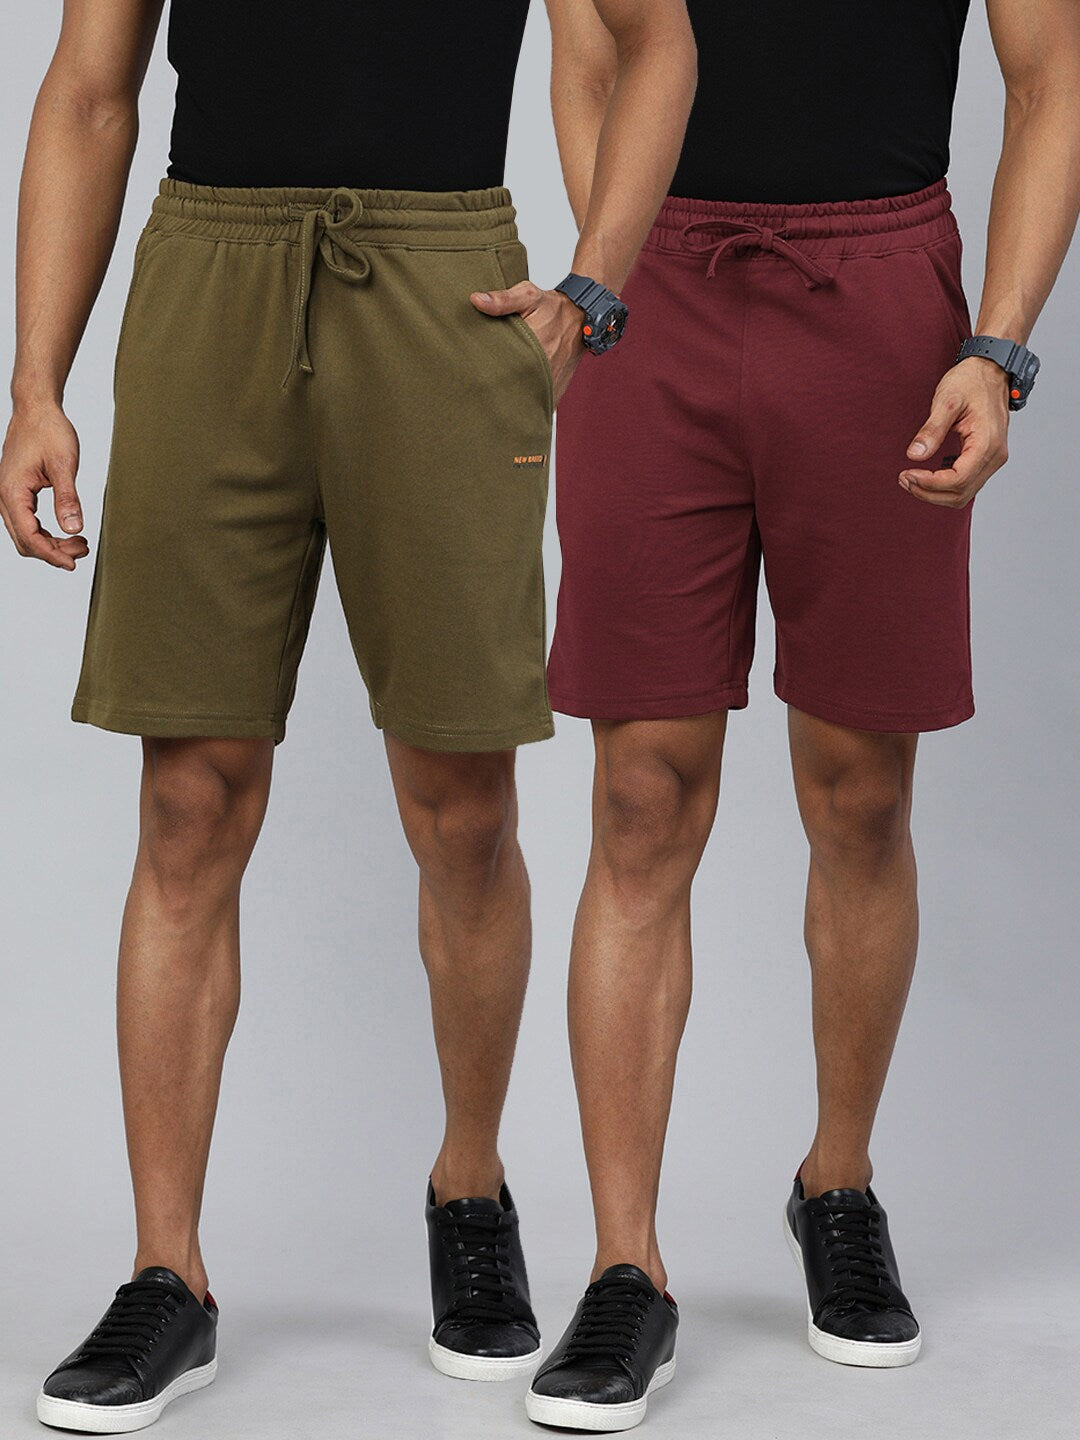 Shop Men Basic Shorts Online.